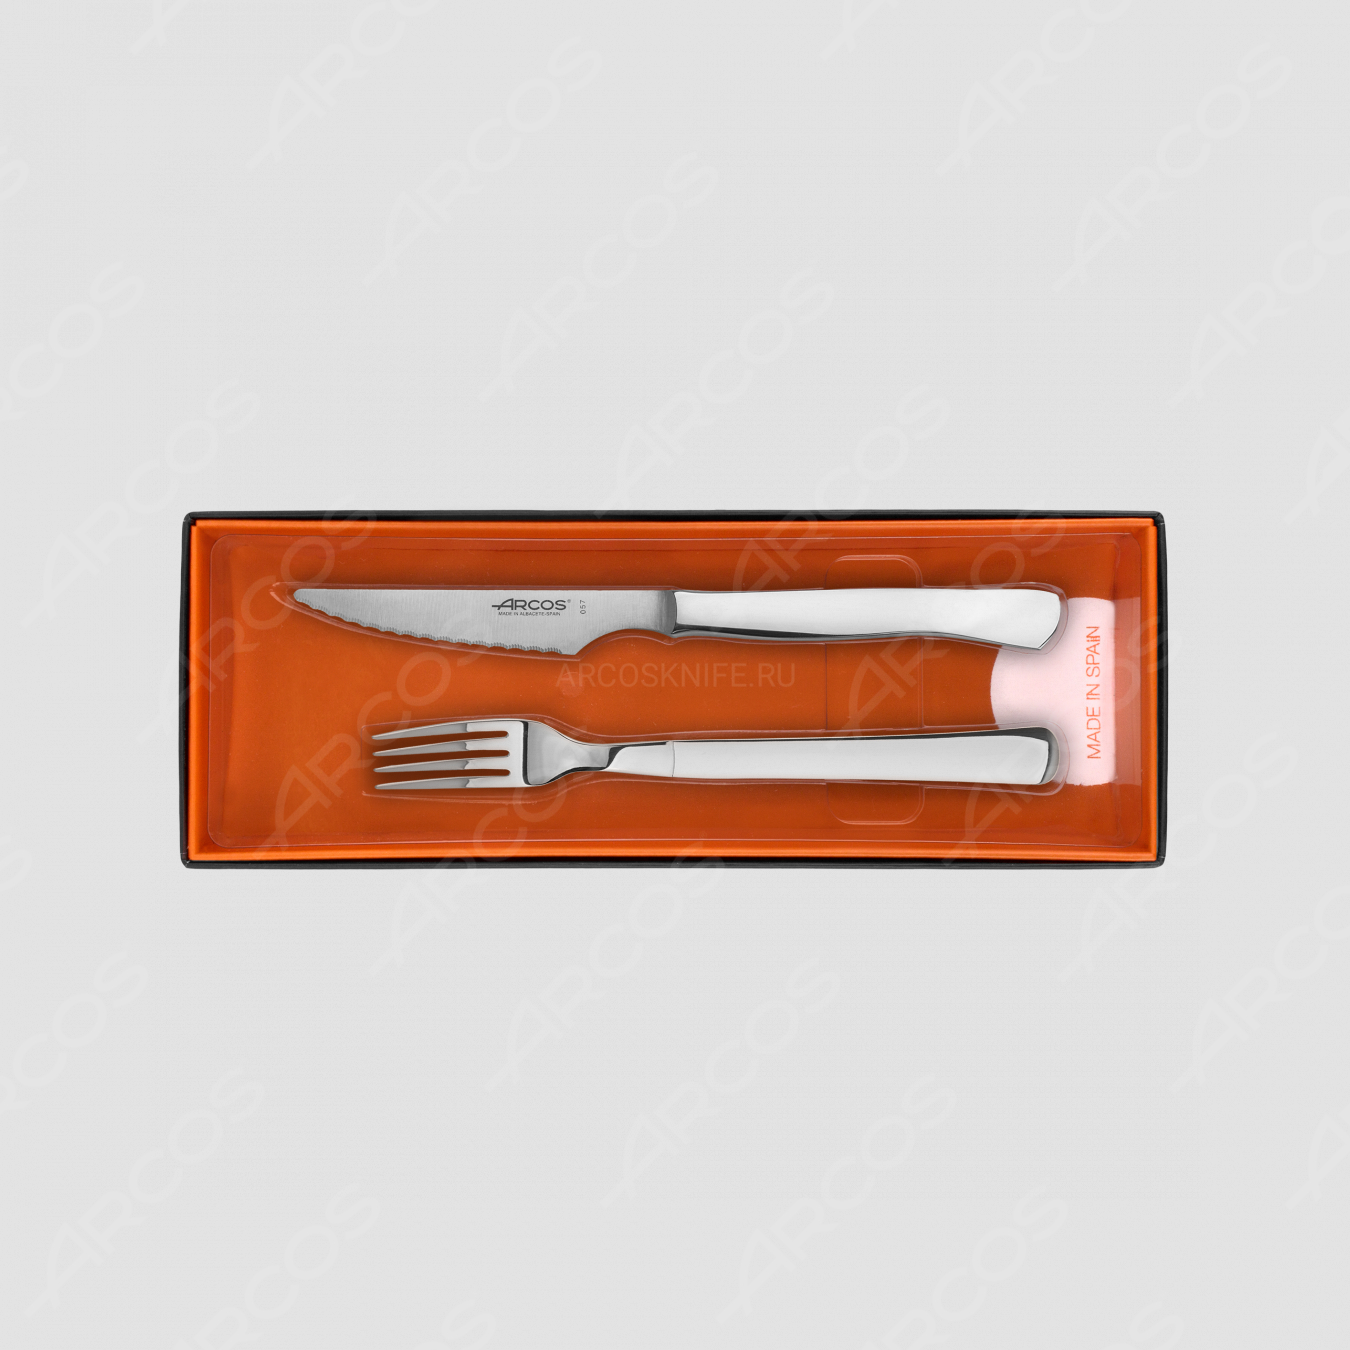 Набор столовых приборов для стейка на 6 персон, рукоять нержавеющая сталь, серия Steak Knives, ARCOS, Испания